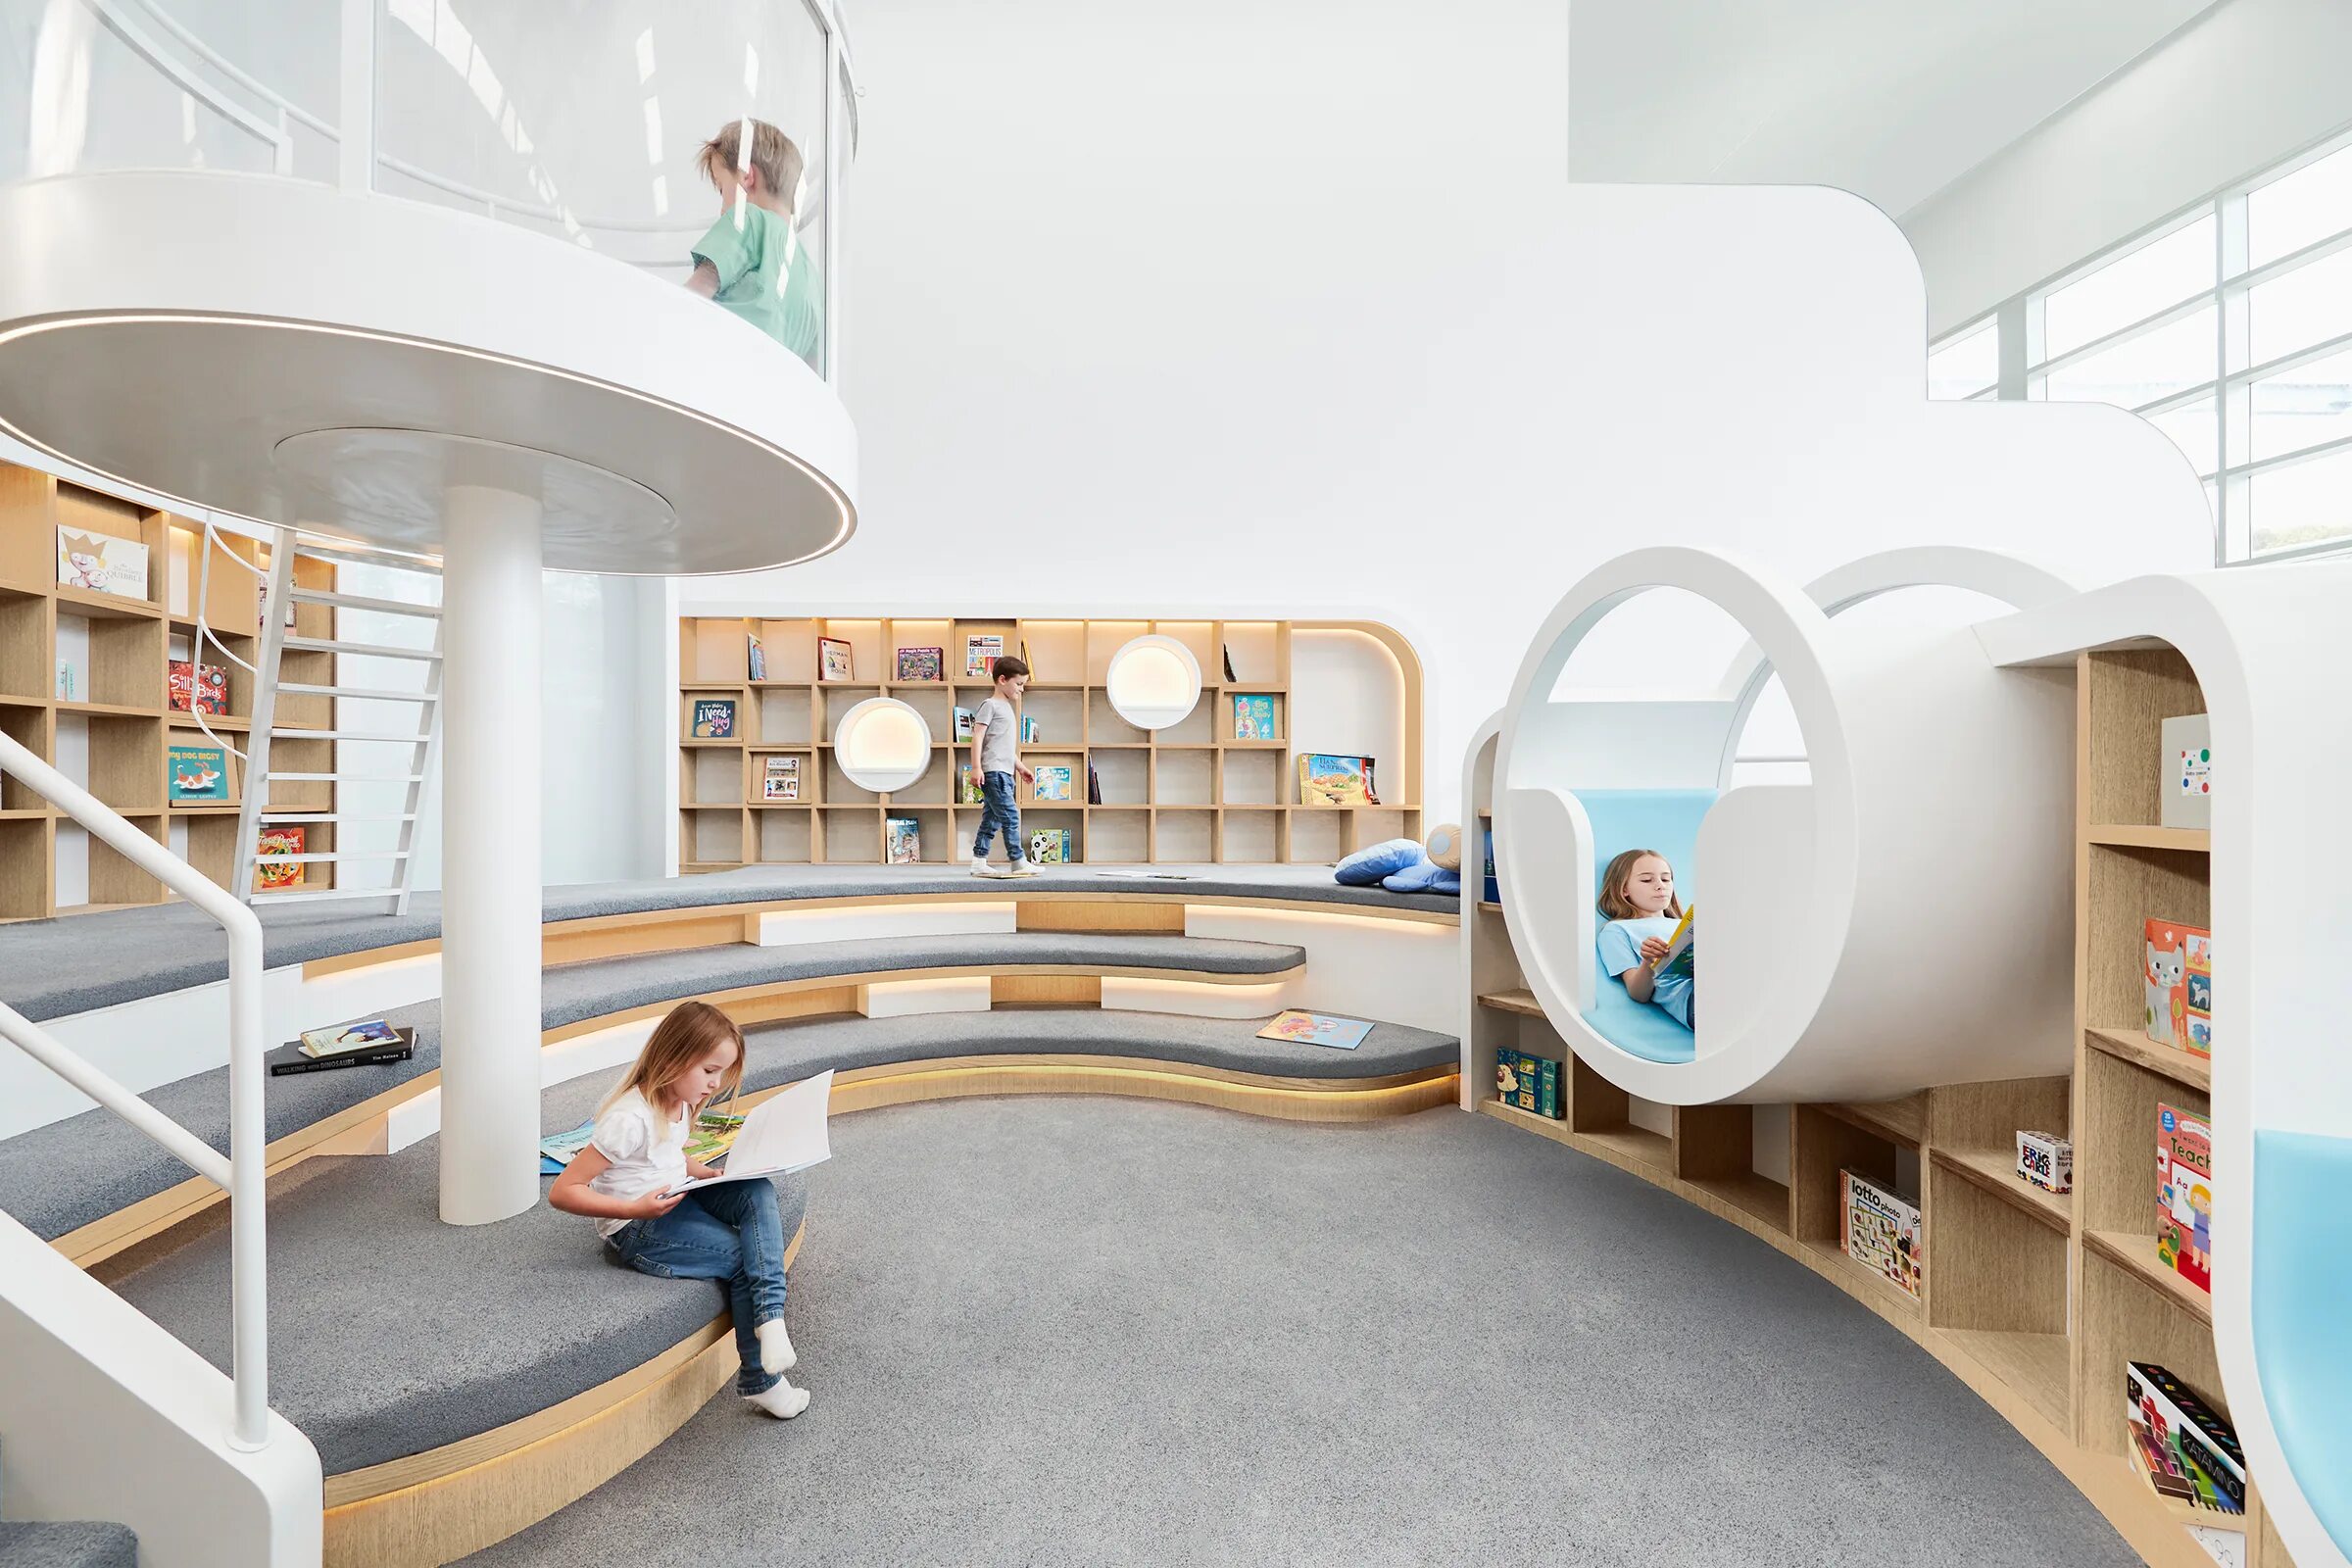 Второй этаж в школе. Детский образовательный центр «Nubo» в Сиднее. Необычный детский сад. Интерьер современной библиотеки. Современное пространство детского сада.